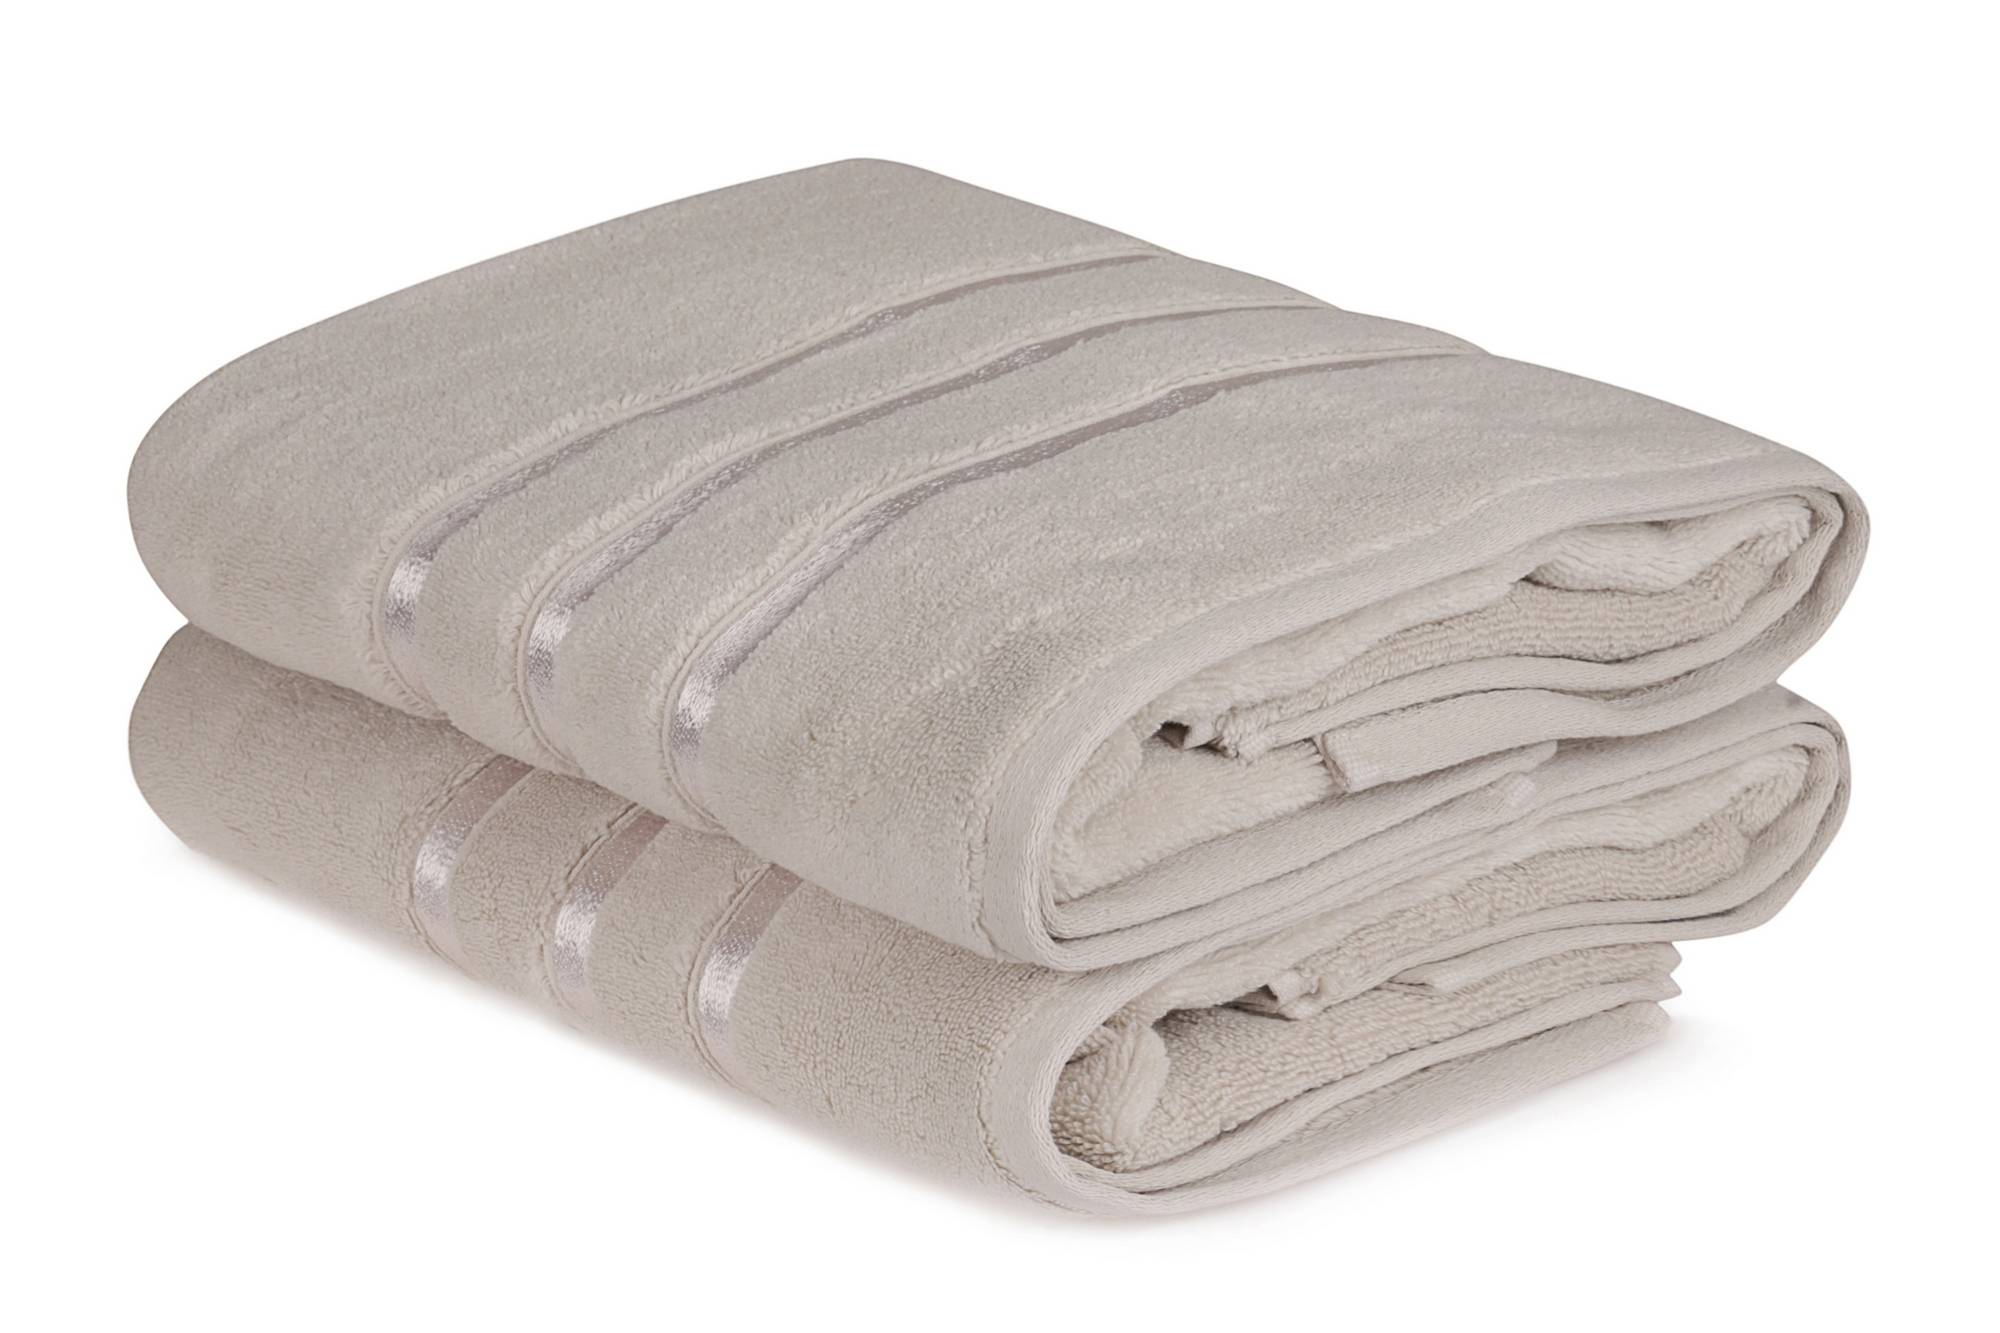 Lot de 2 serviettes de bain trois liteaux texture pelucheuse Vitta 70x140cm 100% Coton Grège